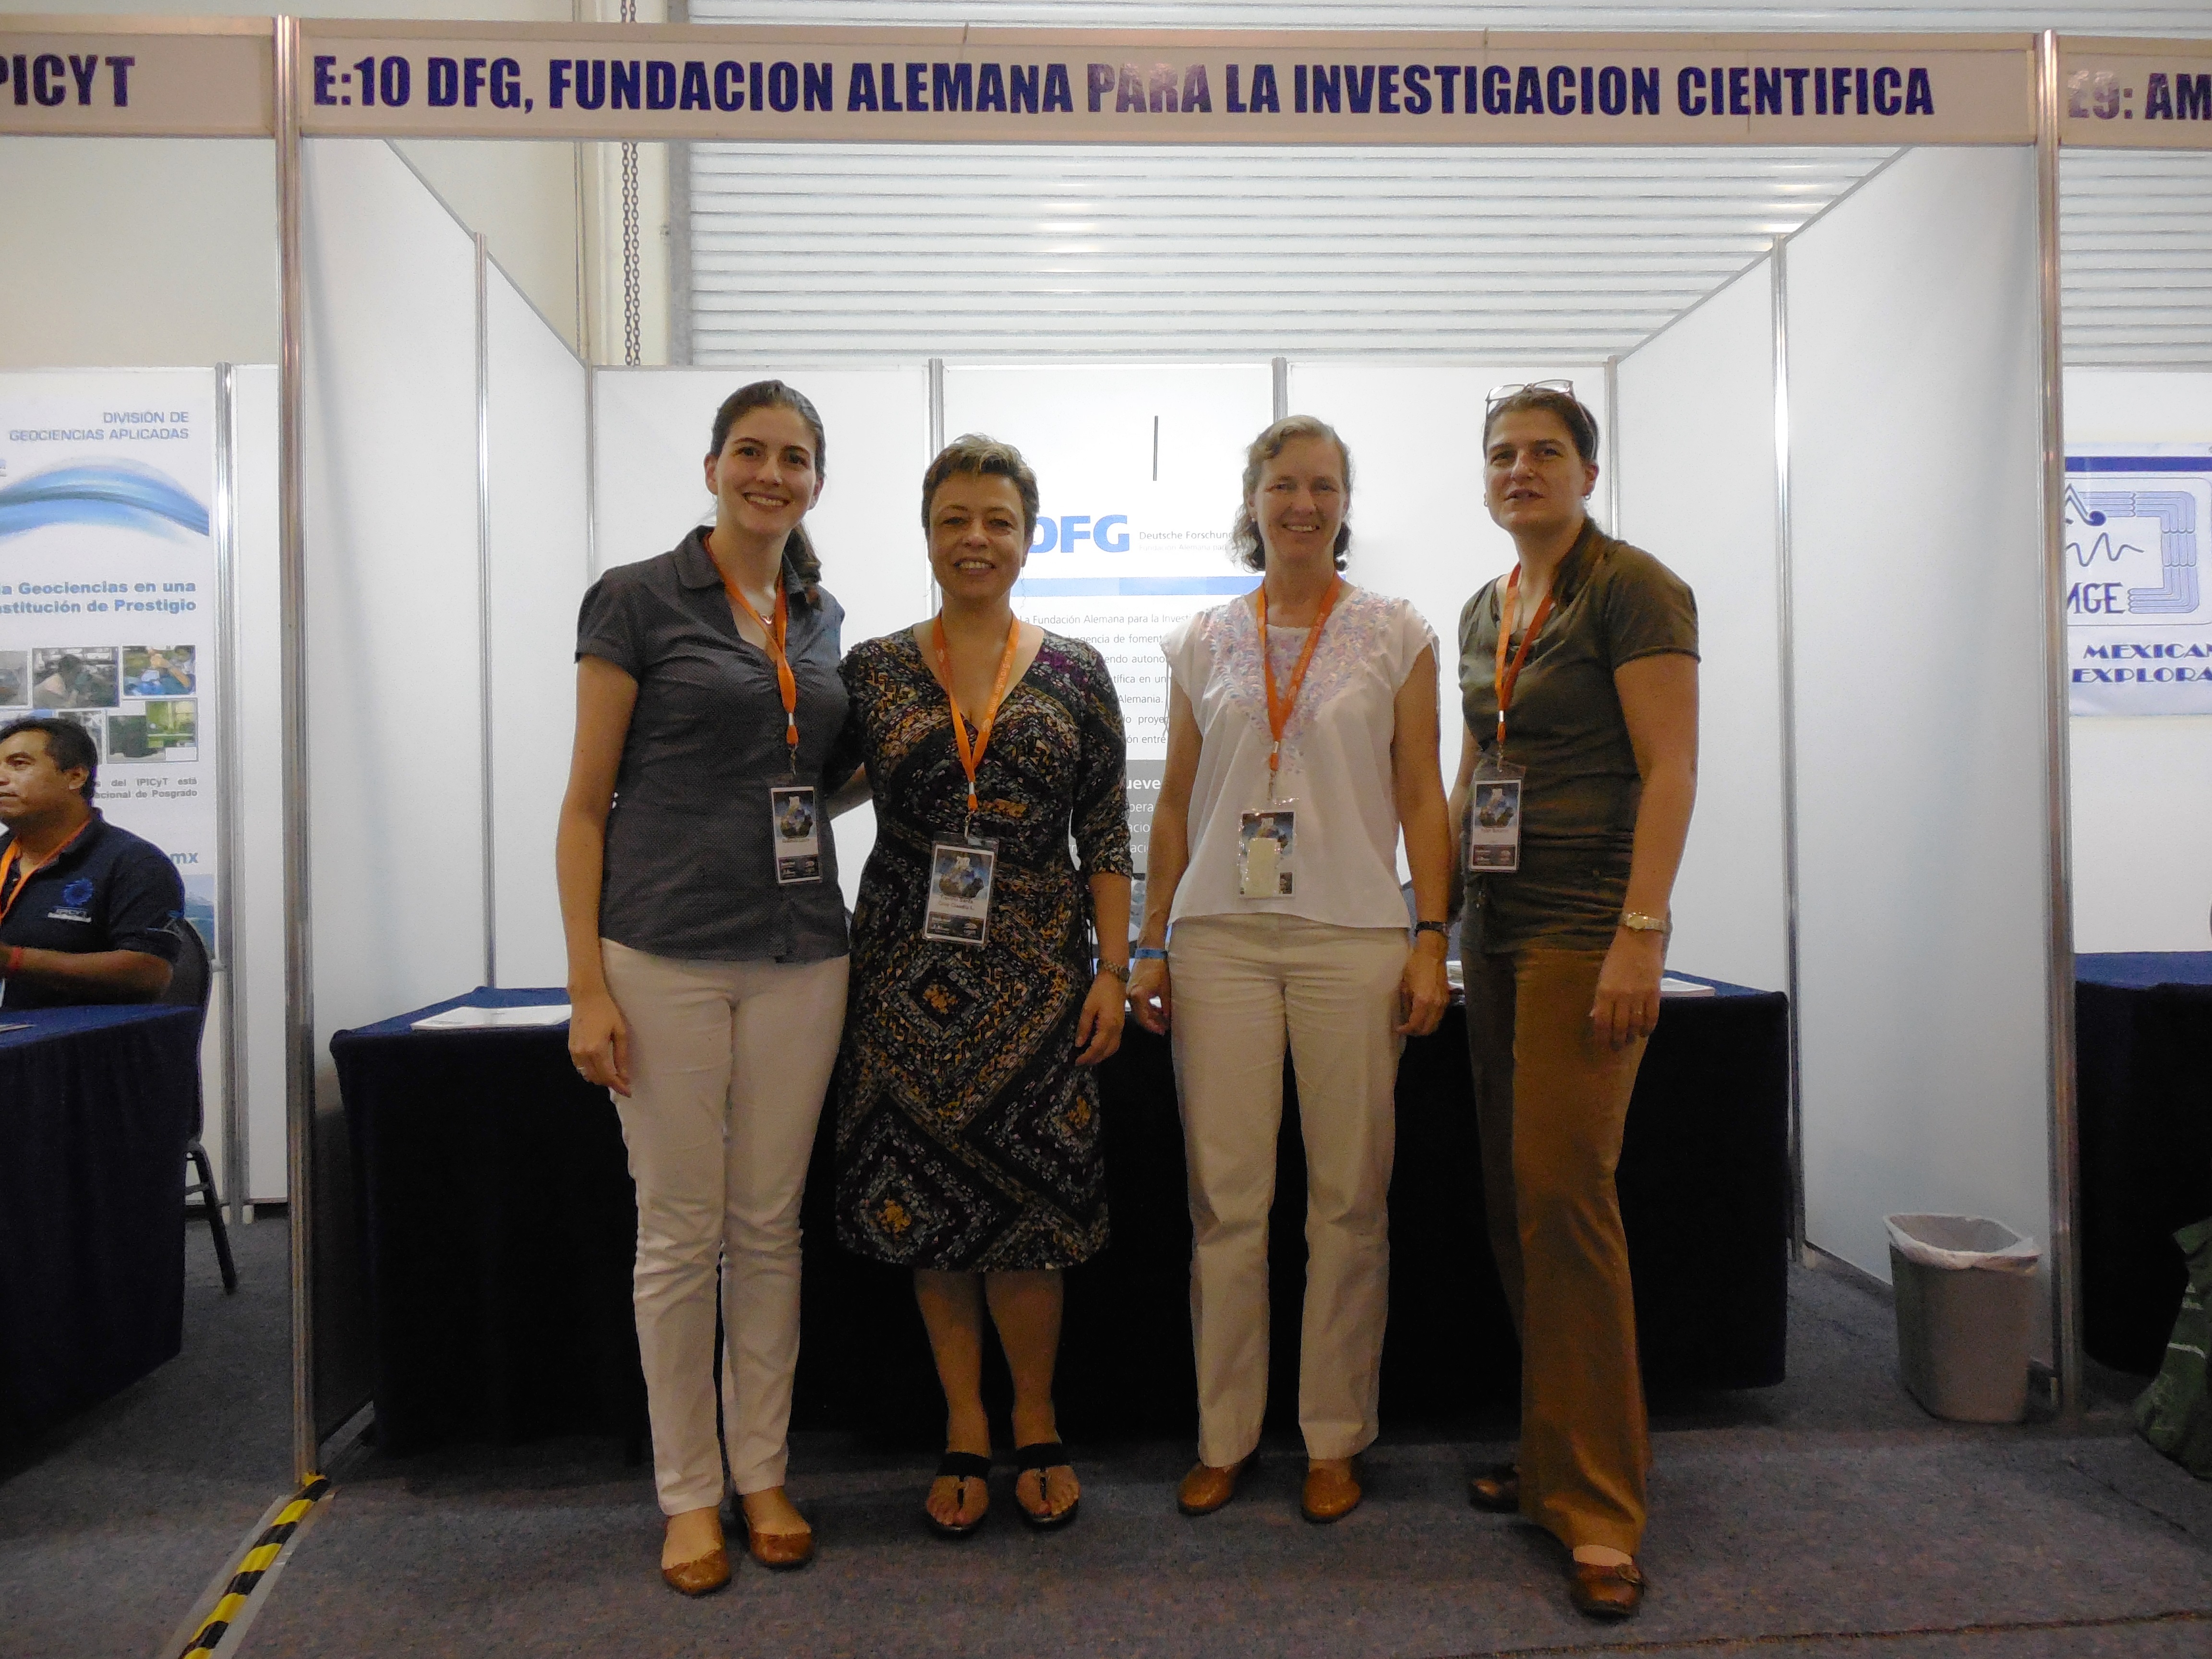 Gruppenbild vor dem DFG-Stand (v.l.n.r.): Laura Redondo (DFG), Prof. Claudia Treviño (Alexander von Humboldt-Stiftung), Prof. Christina Siebe (DFG) und Susanne Faber (DAAD)